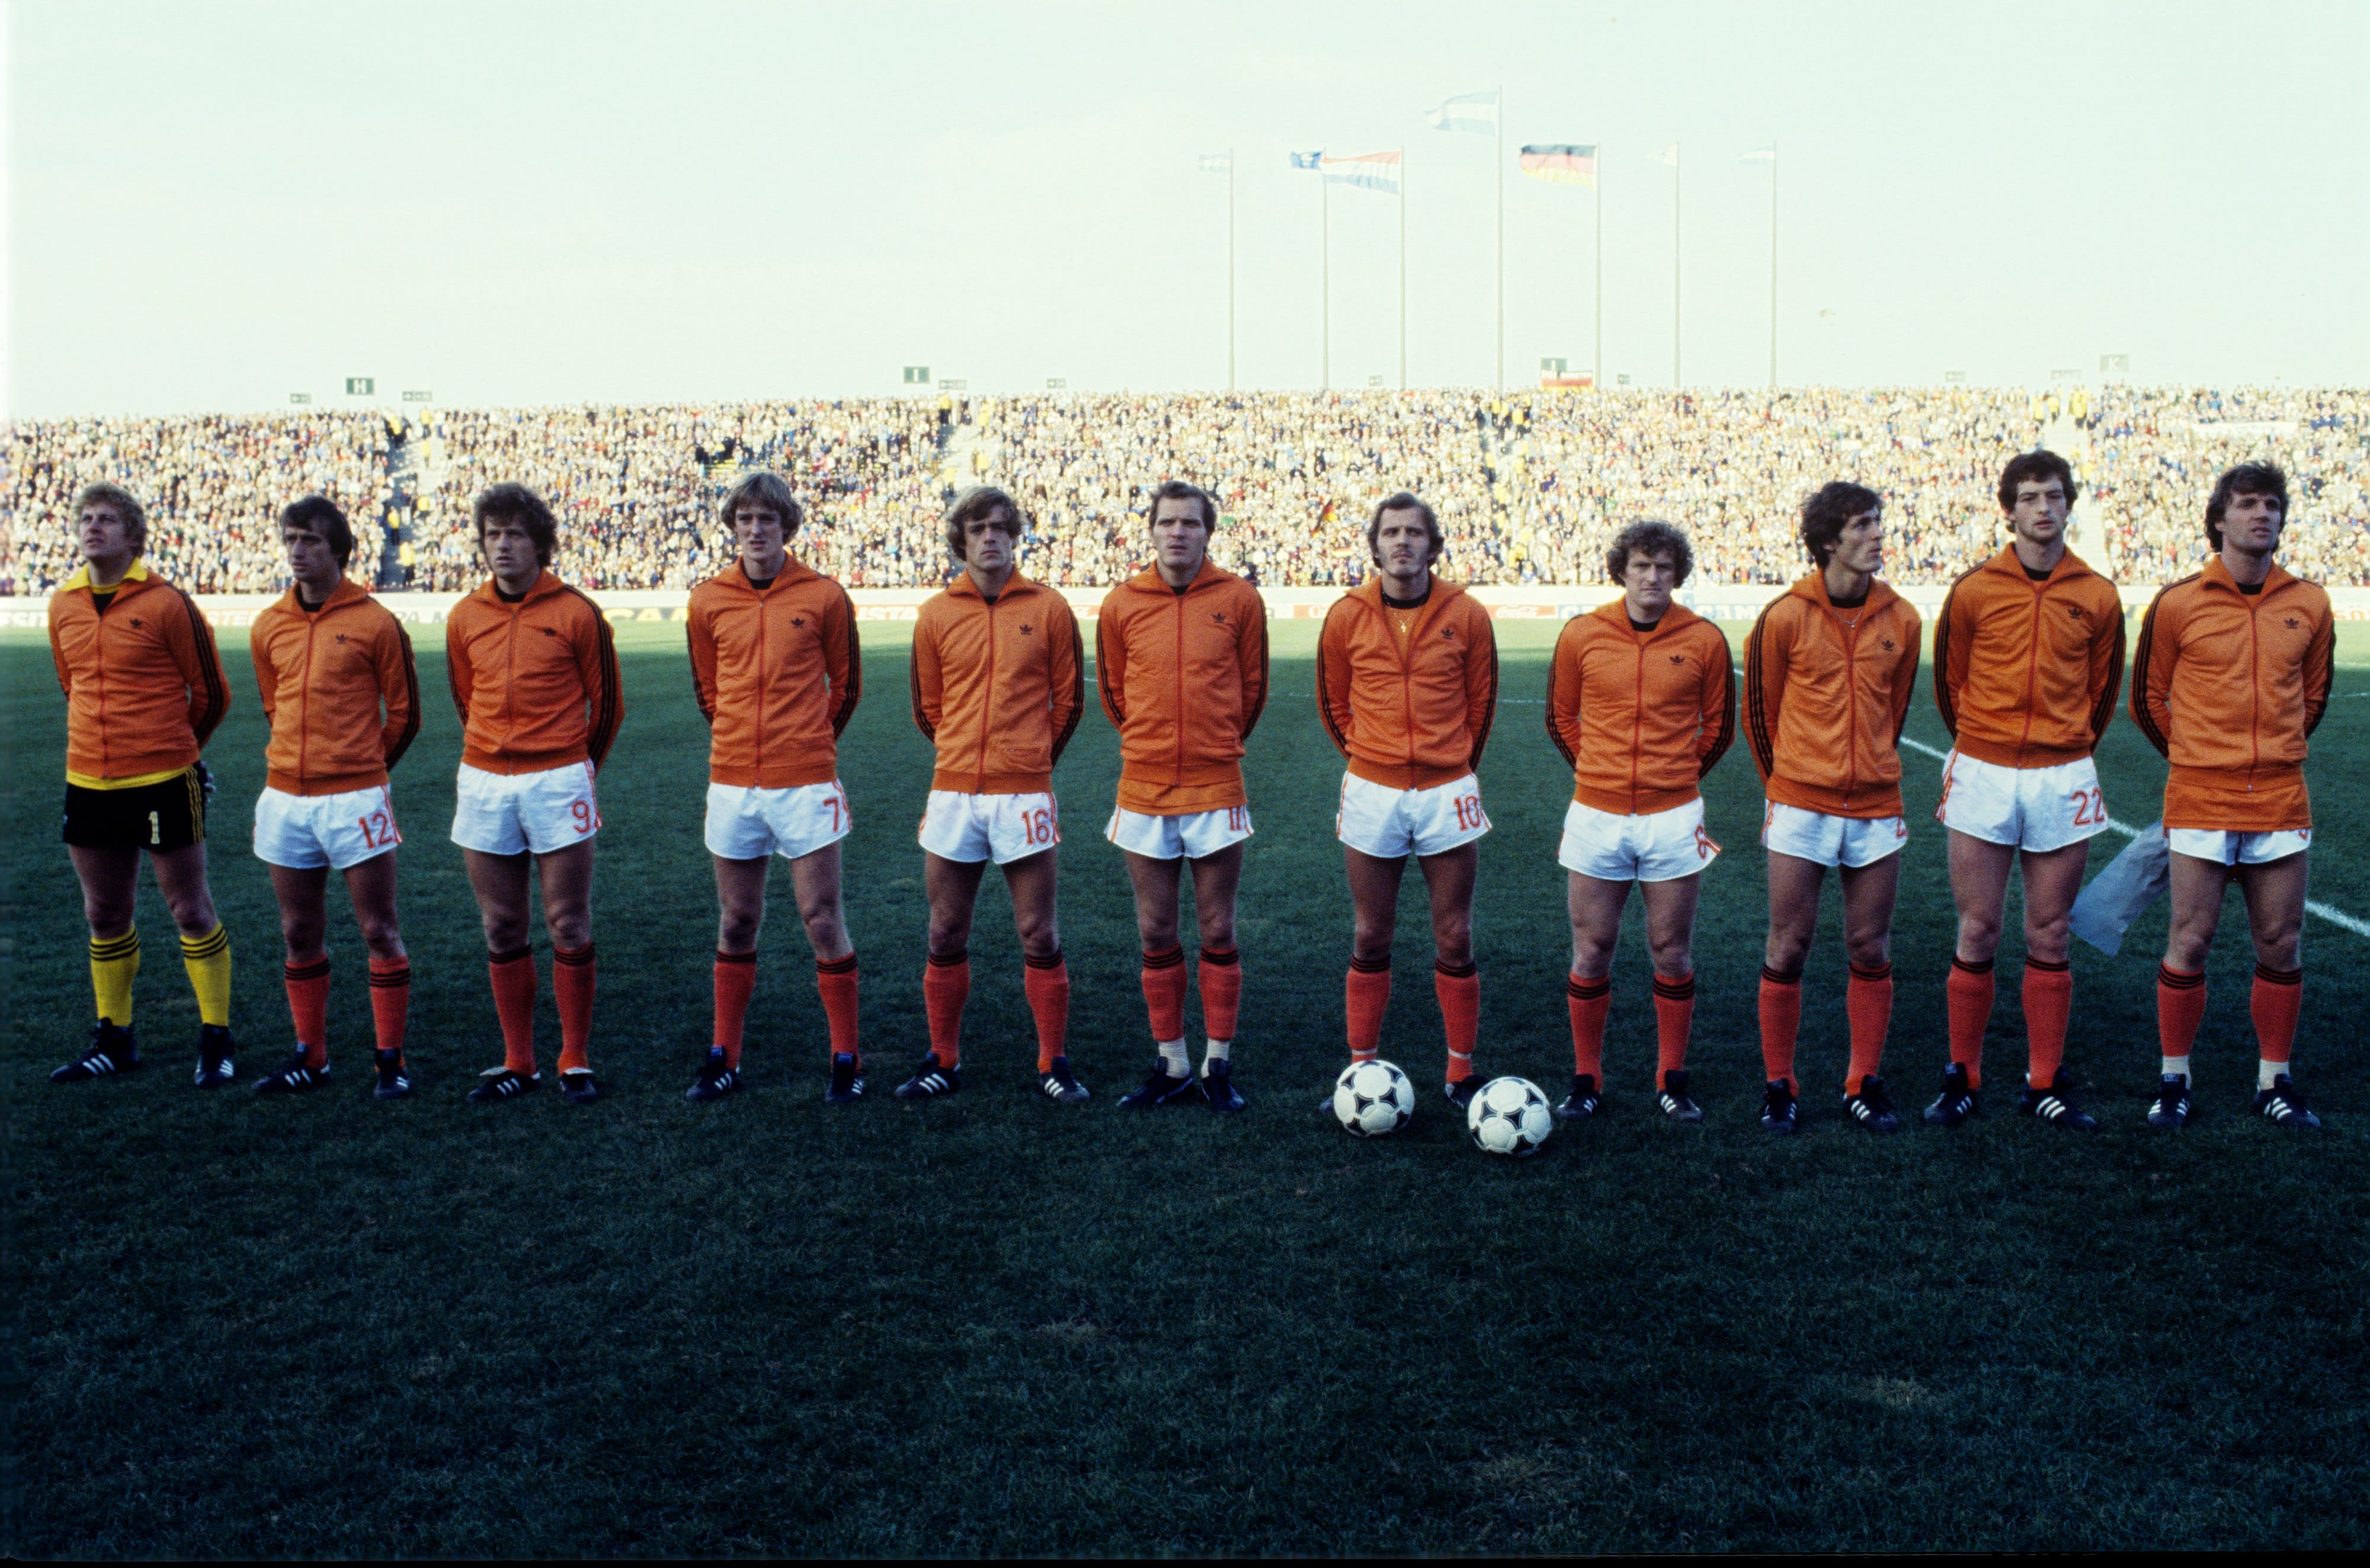 וים יאנסן במדי נבחרת הולנד במונדיאל 1978